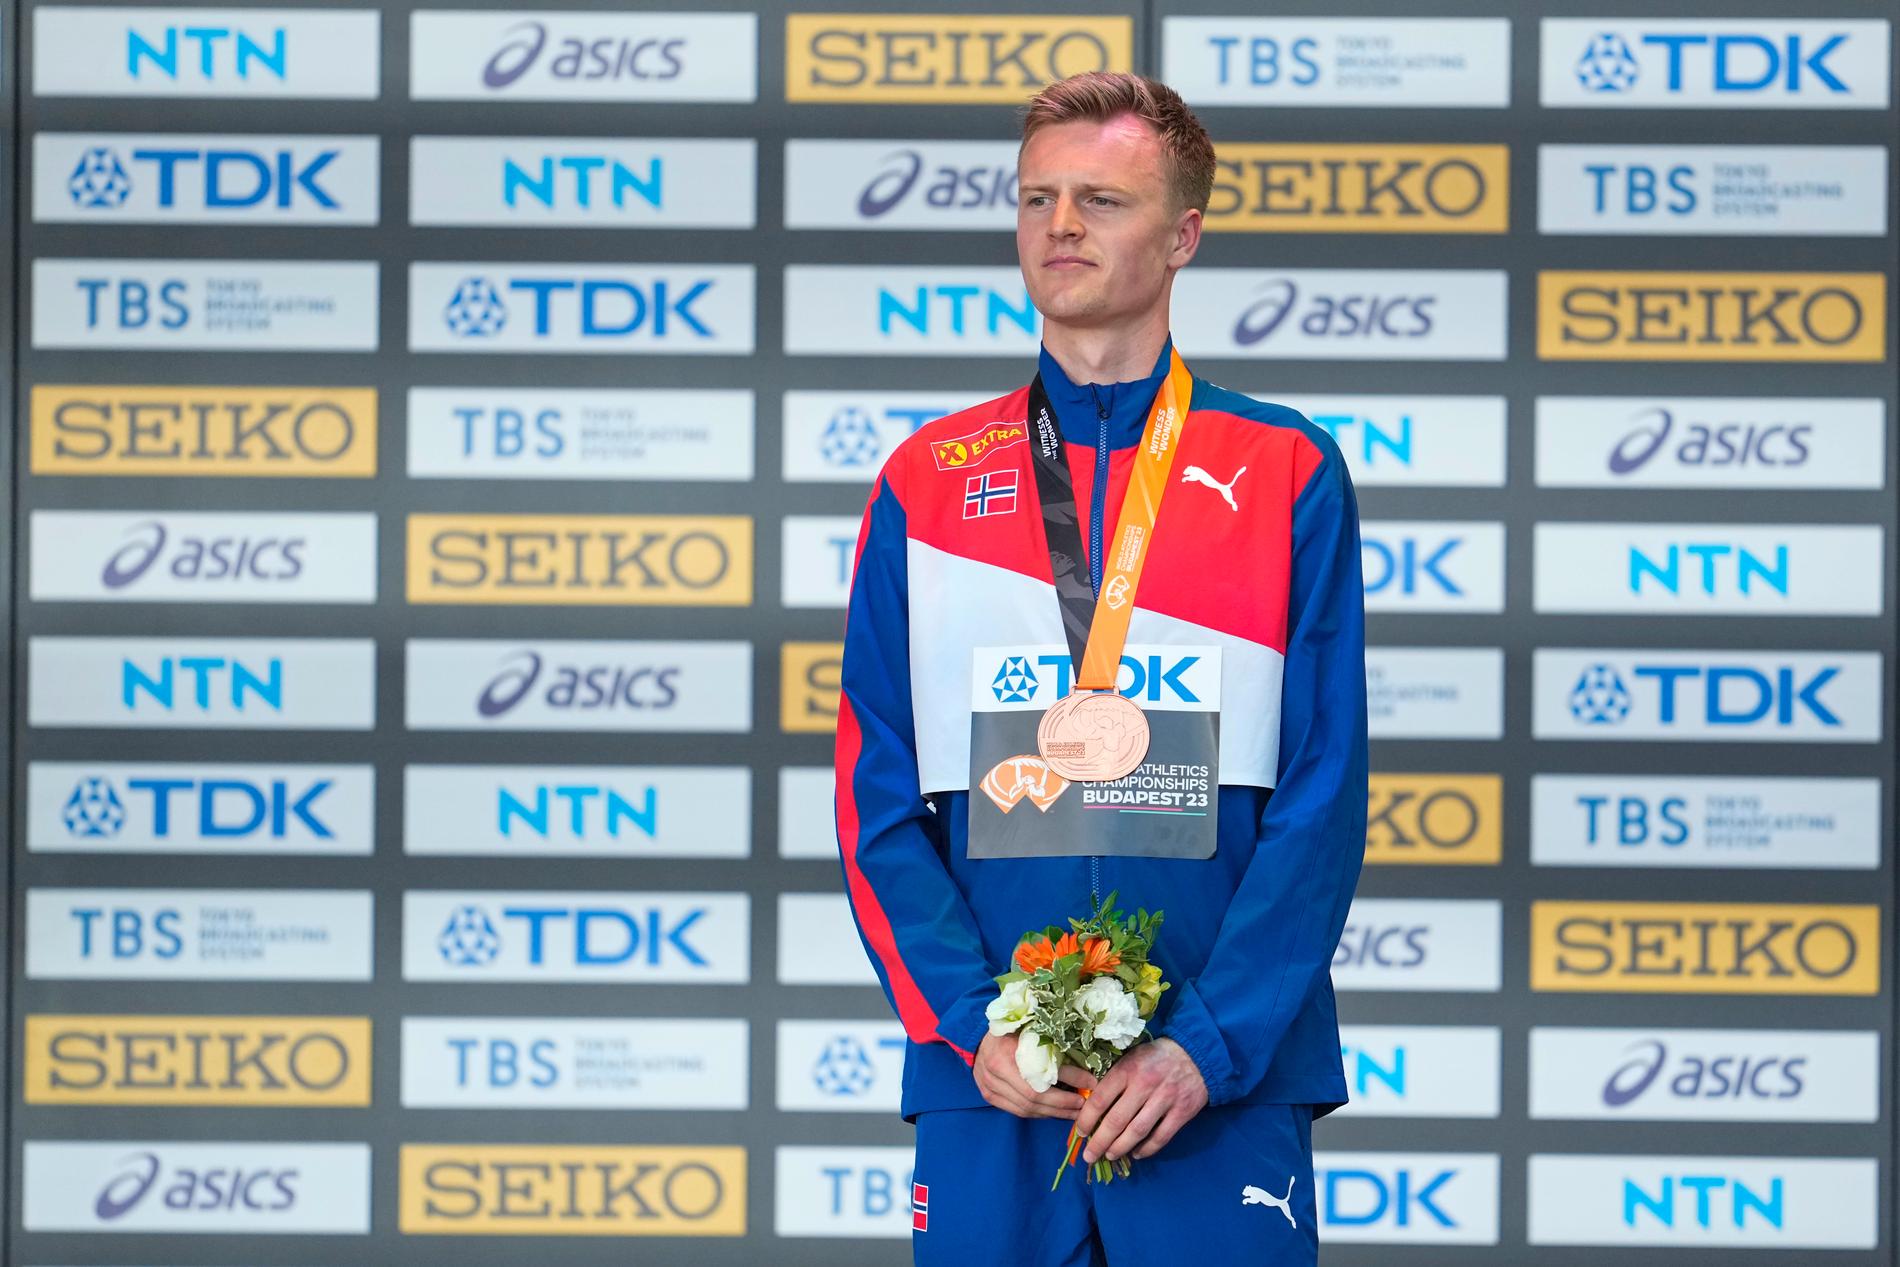 Narve Gilje Nordås tok bronse på 1500 meter under VM